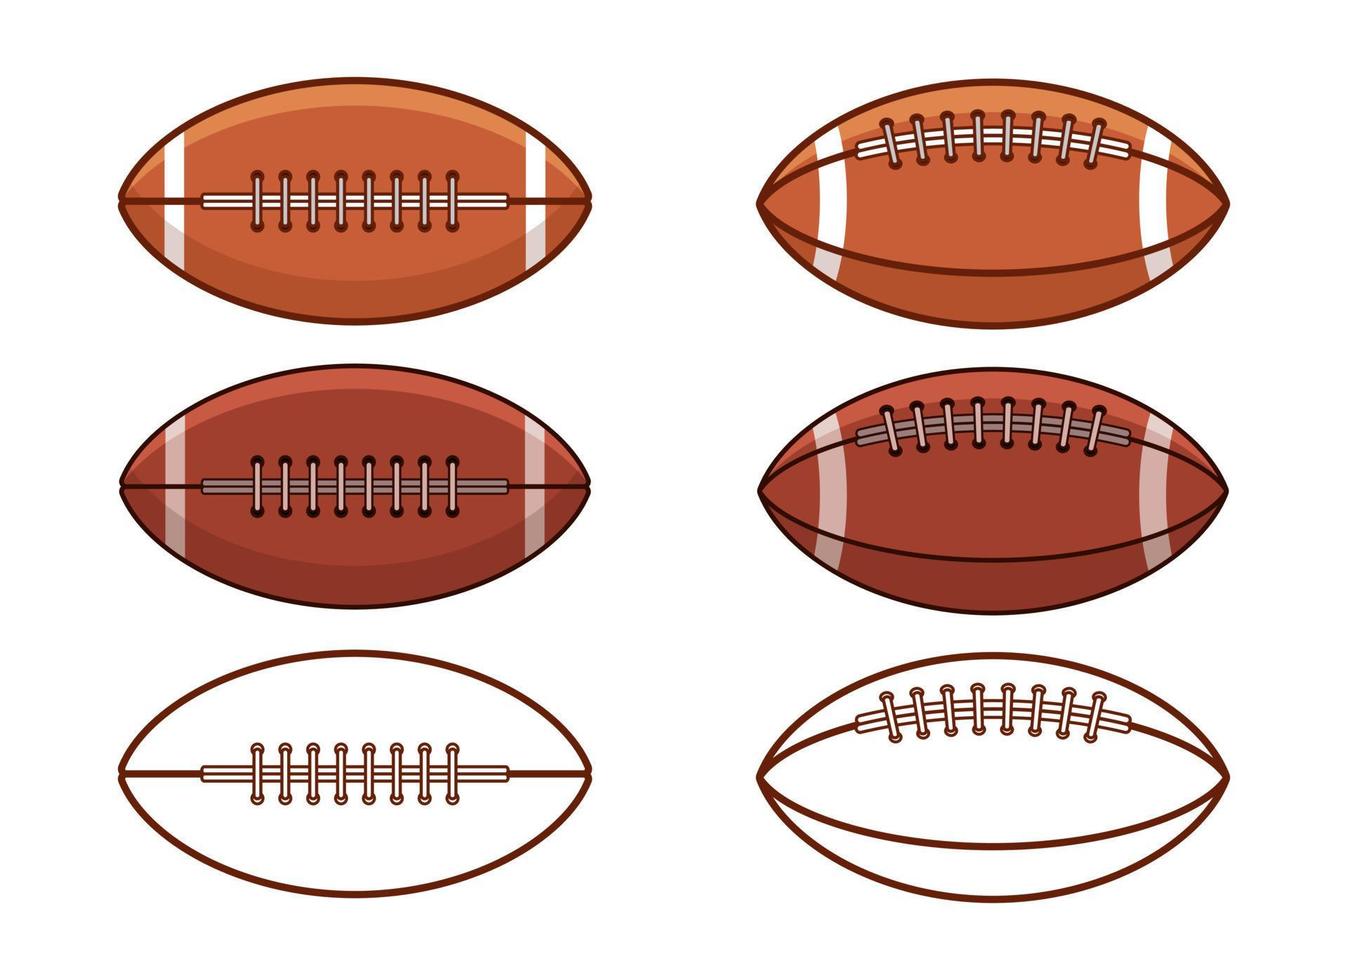 amerikansk fotboll vektordesignillustration isolerad på vit bakgrund vektor